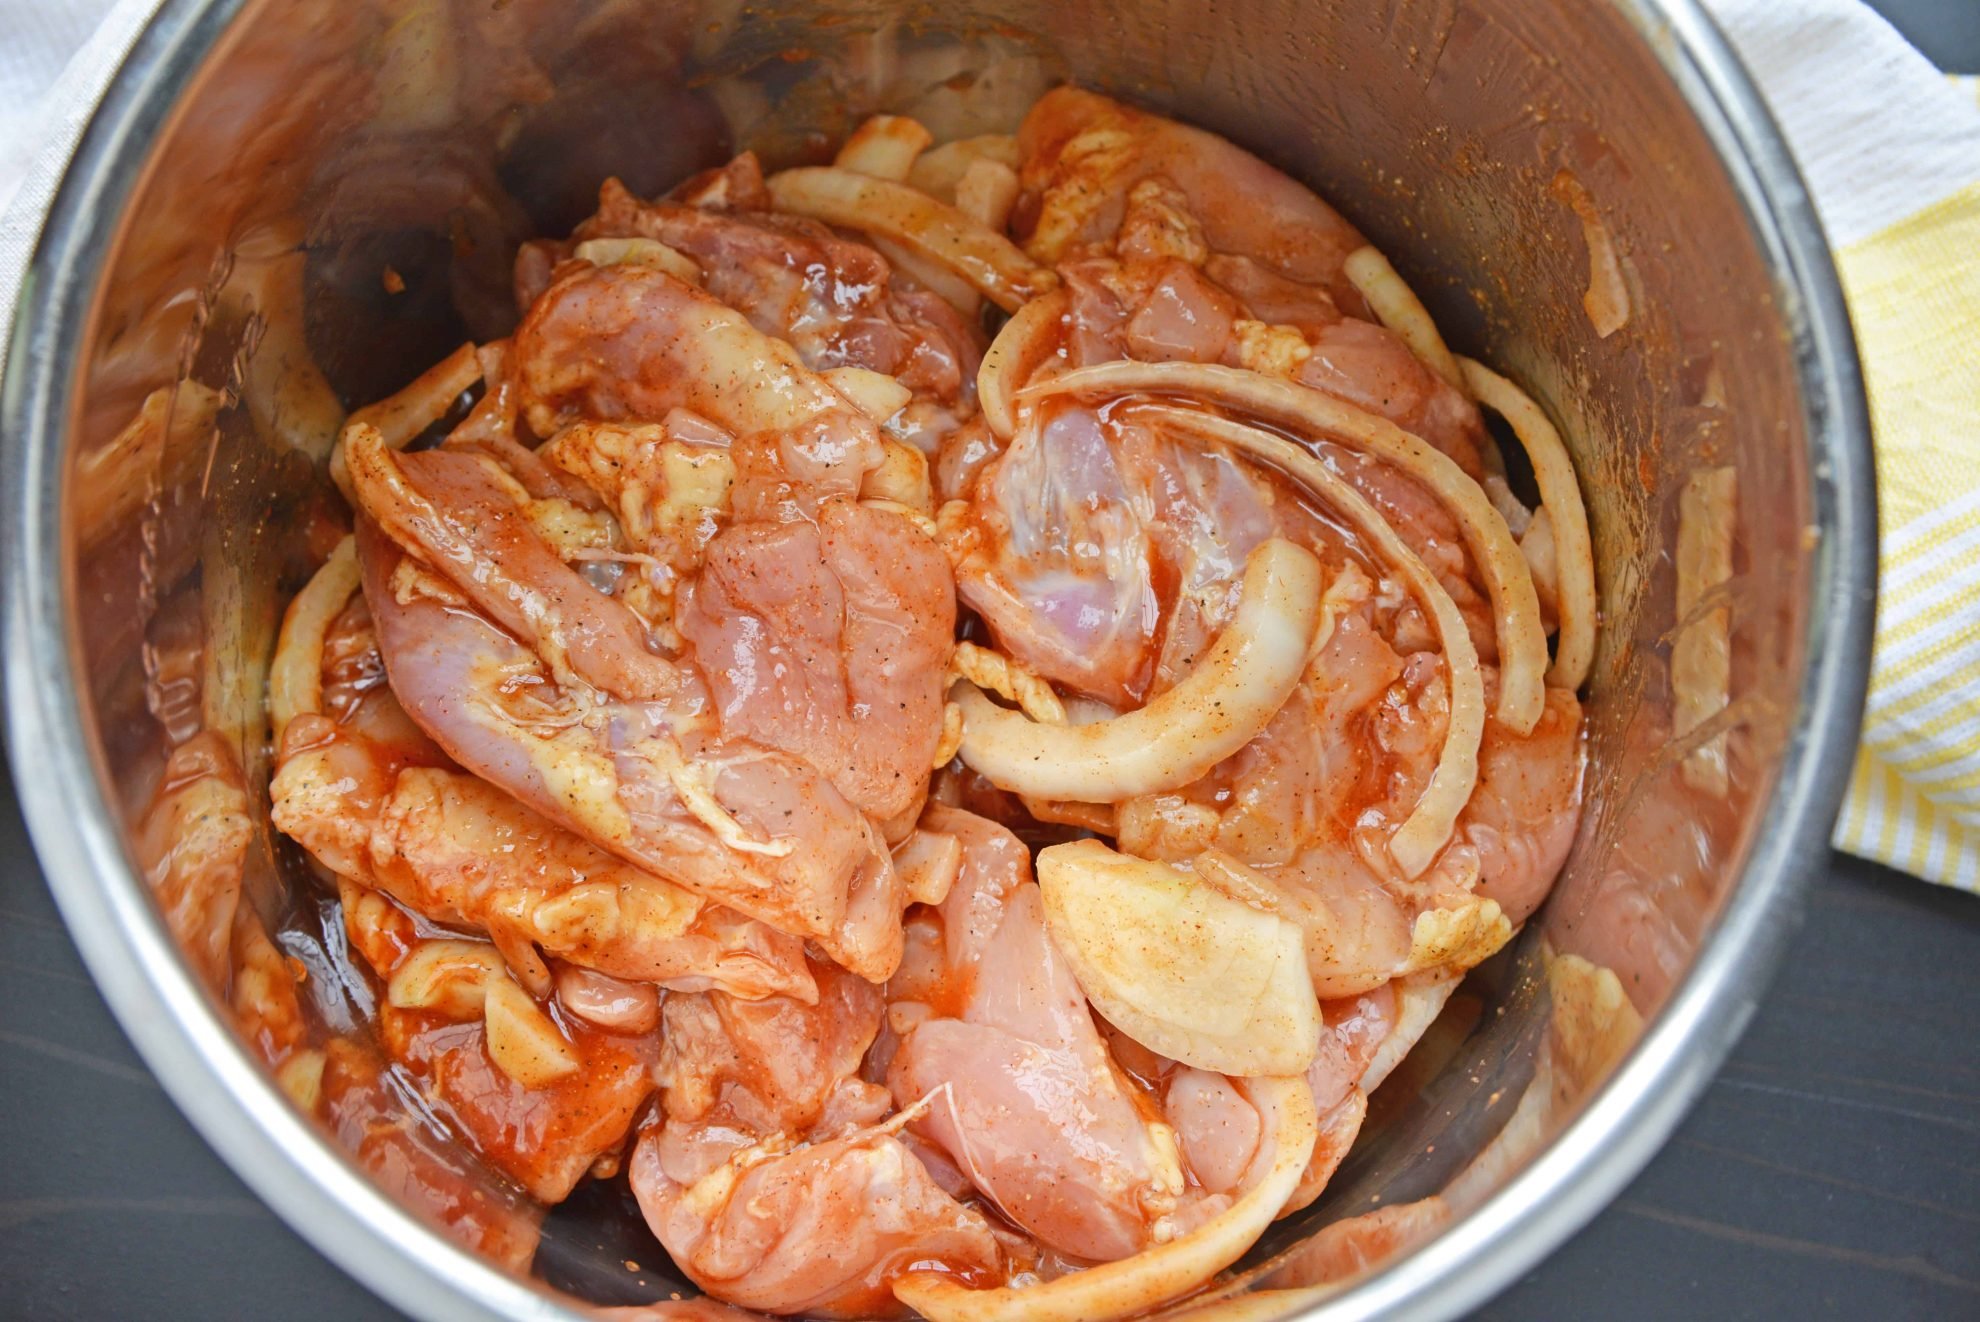 Uncooked chicken in instant pot